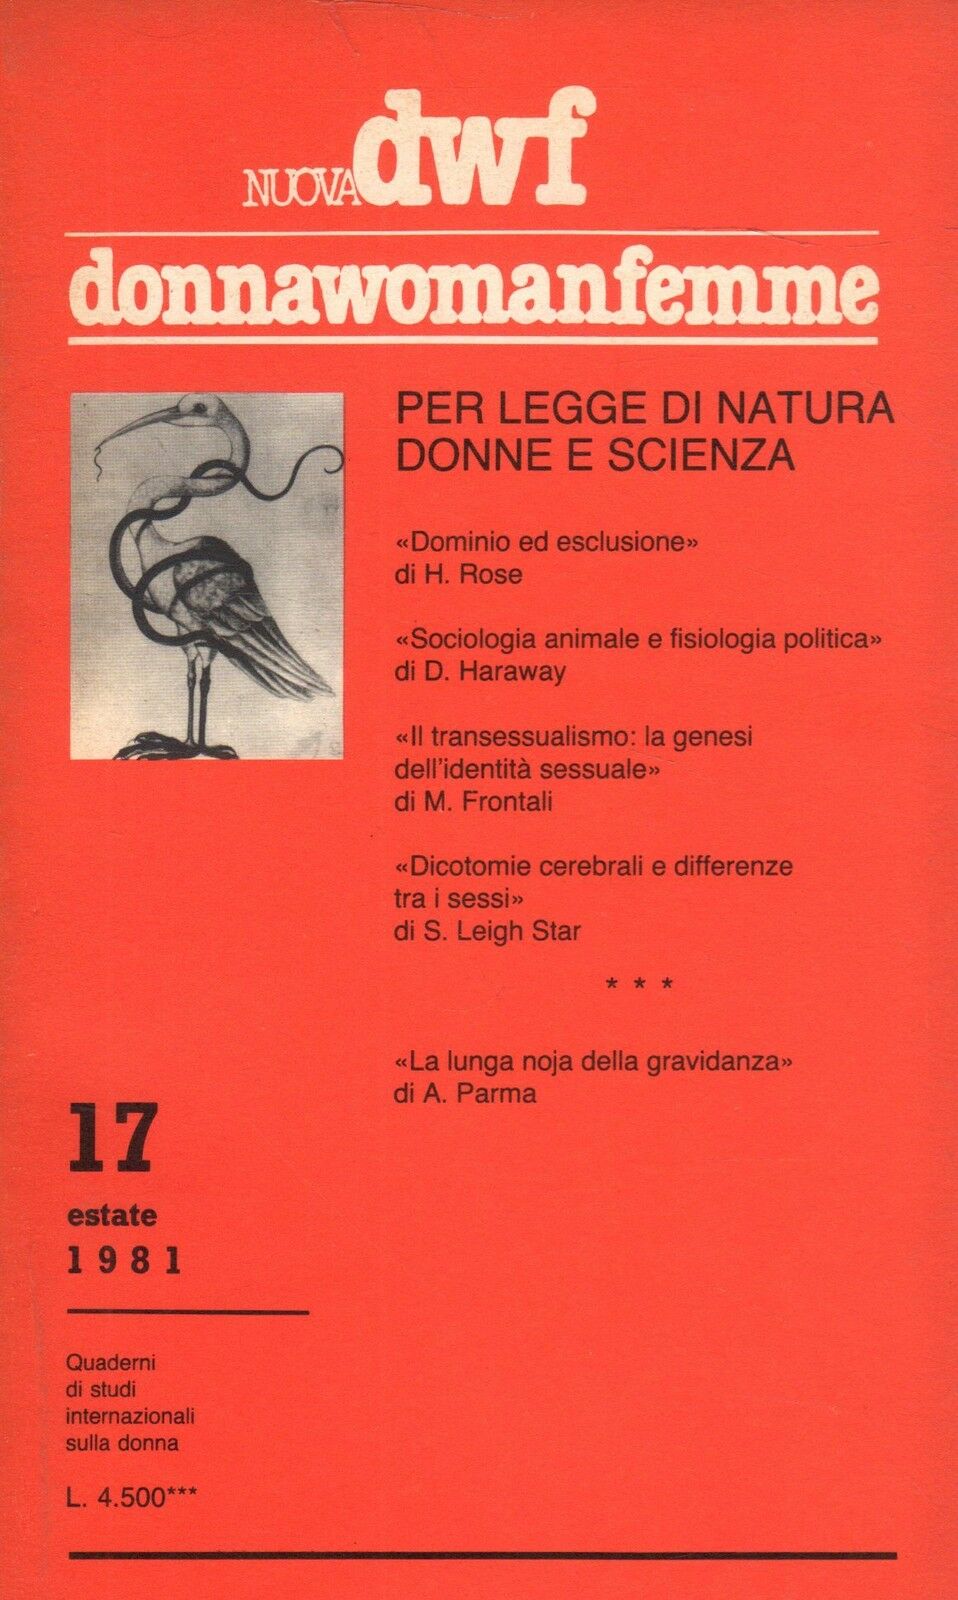 PER LEGGE DI NATURA. Donne e scienza, Nuova DWF (17) 1981